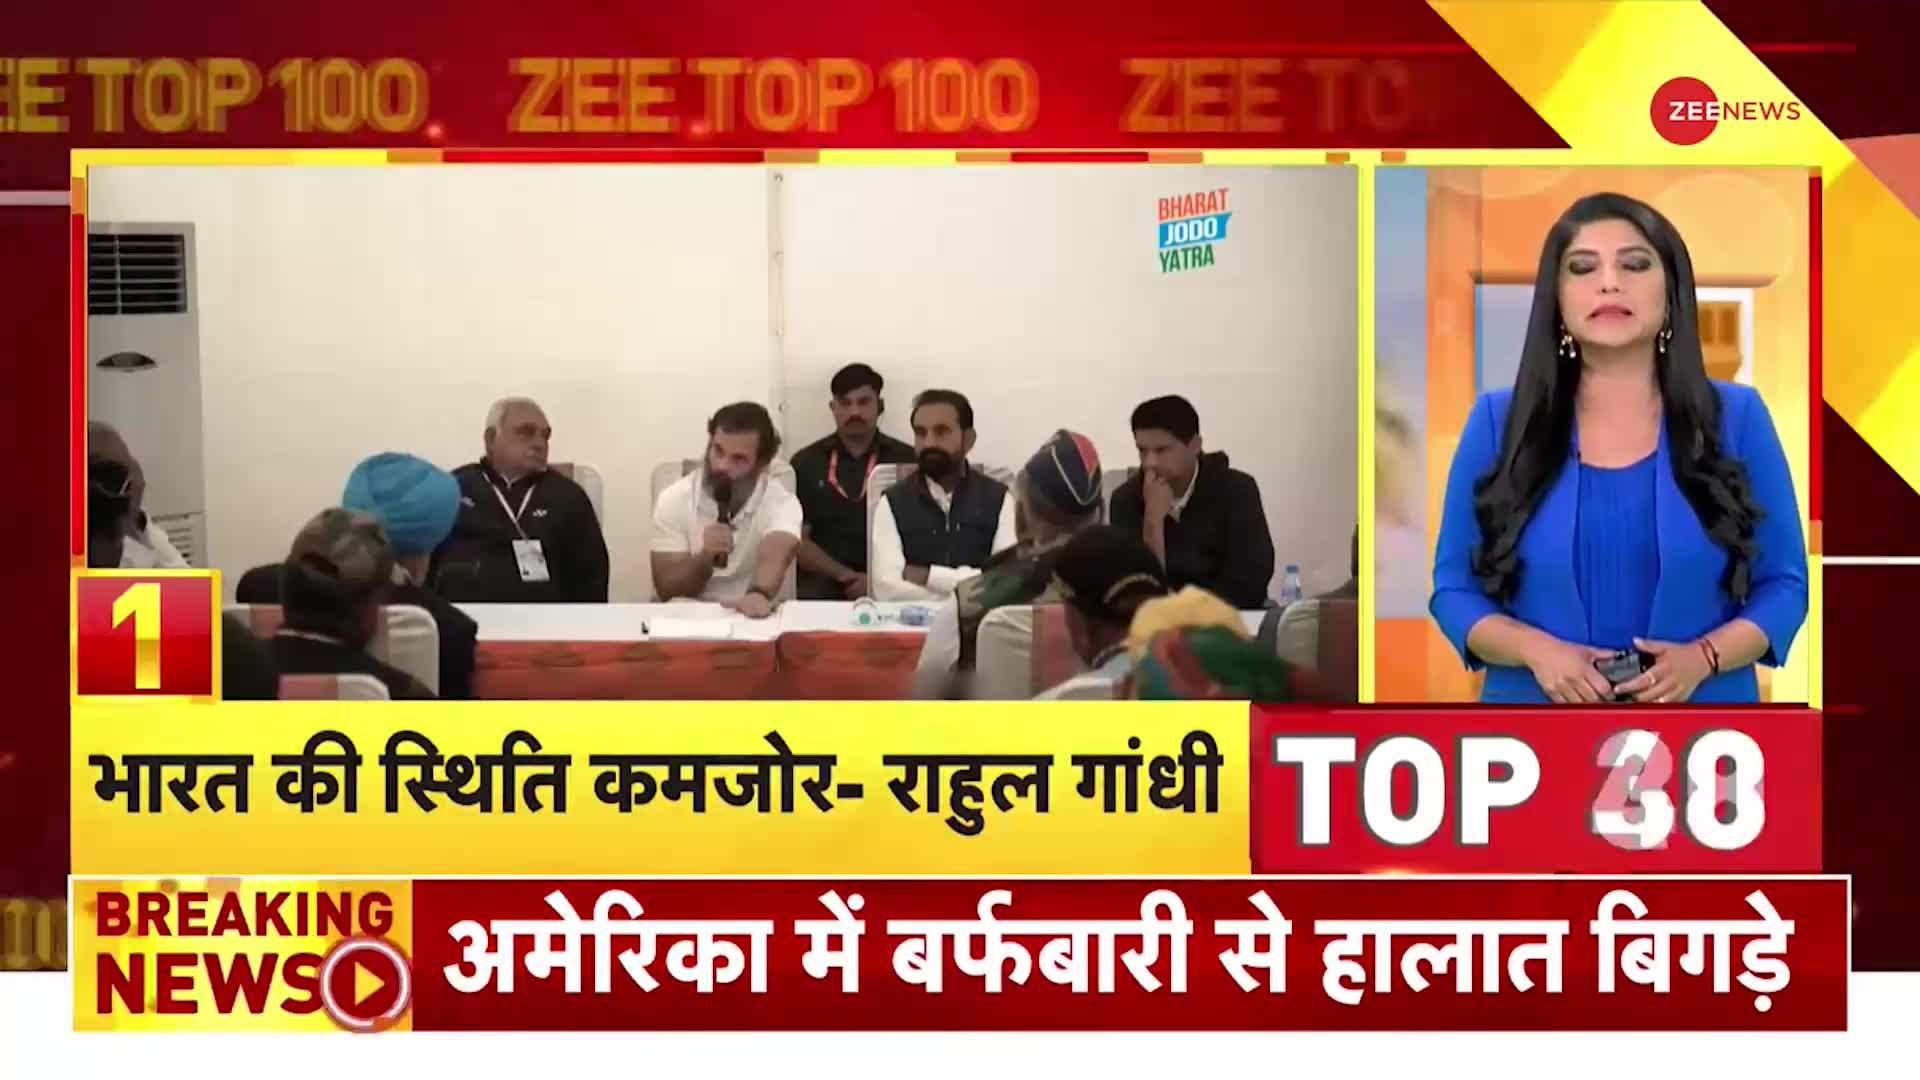 Zee Top 100: राहुल गाँधी का बड़ा बयान- चीन, पकिस्तान कर सकते हैं अटैक | Rahul Gandhi